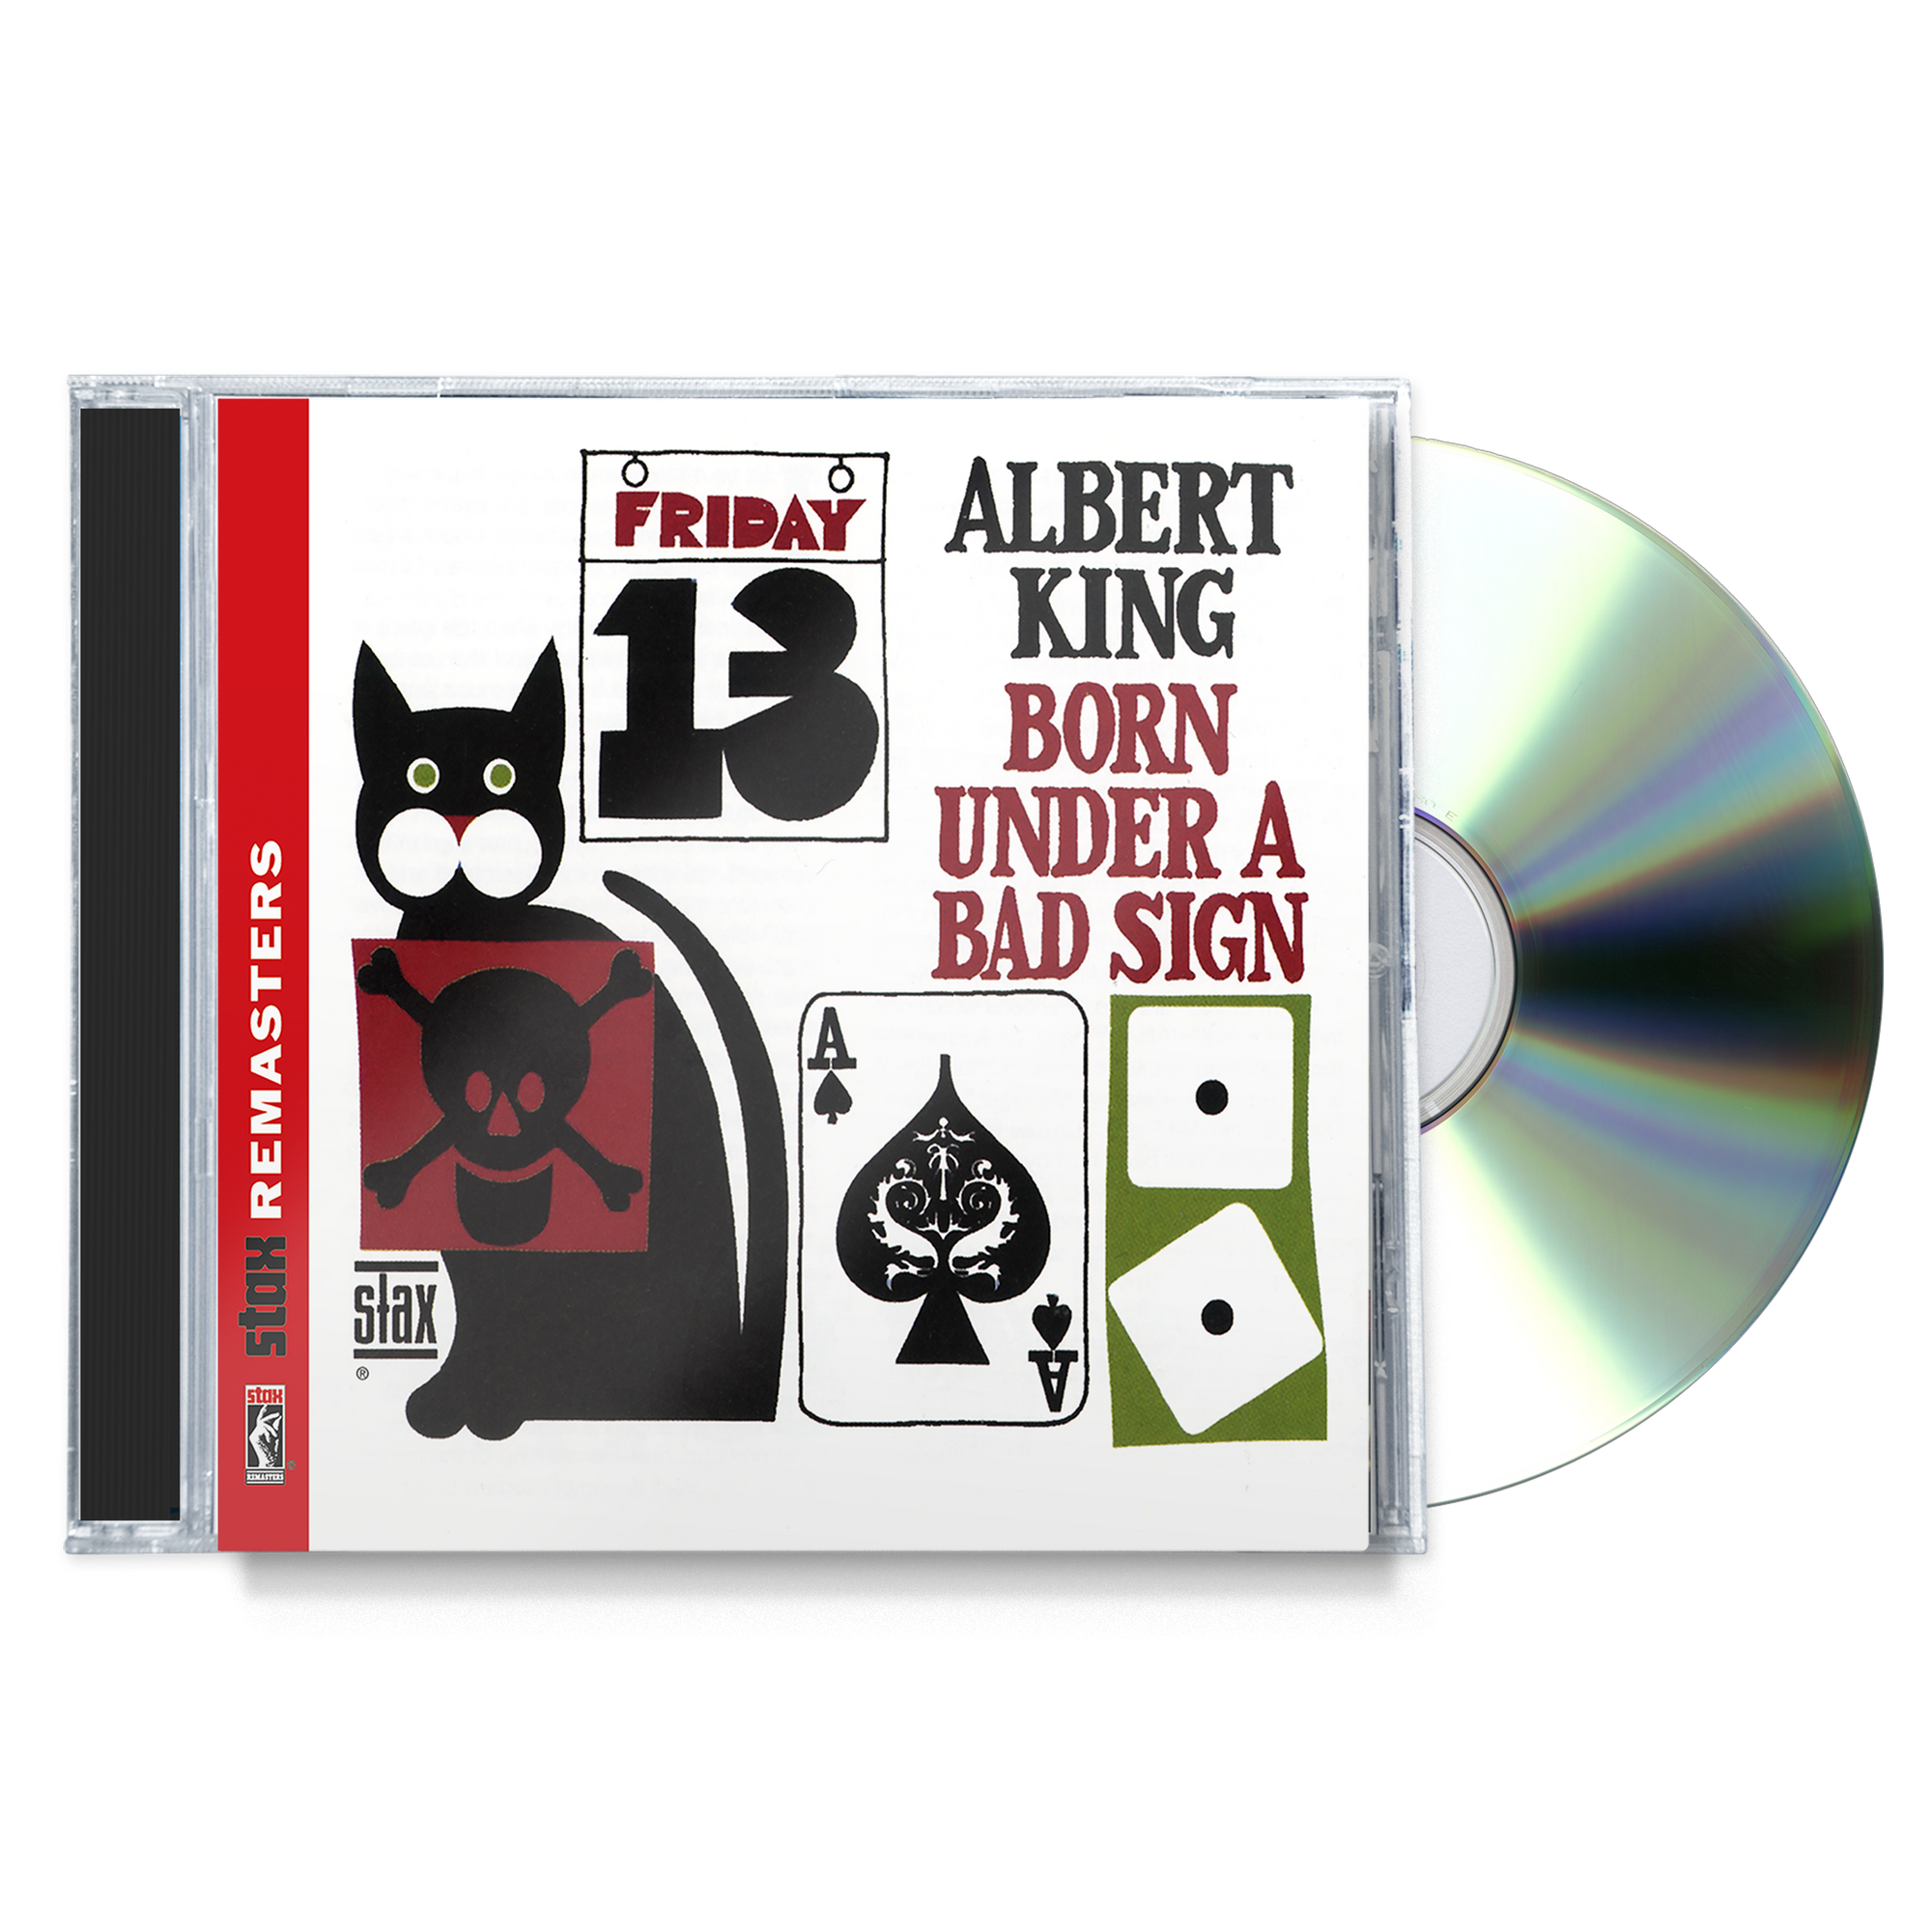 Born Under A Bad Sign (CD) + Born Under a Bad Sign Lyric Tee Bundle